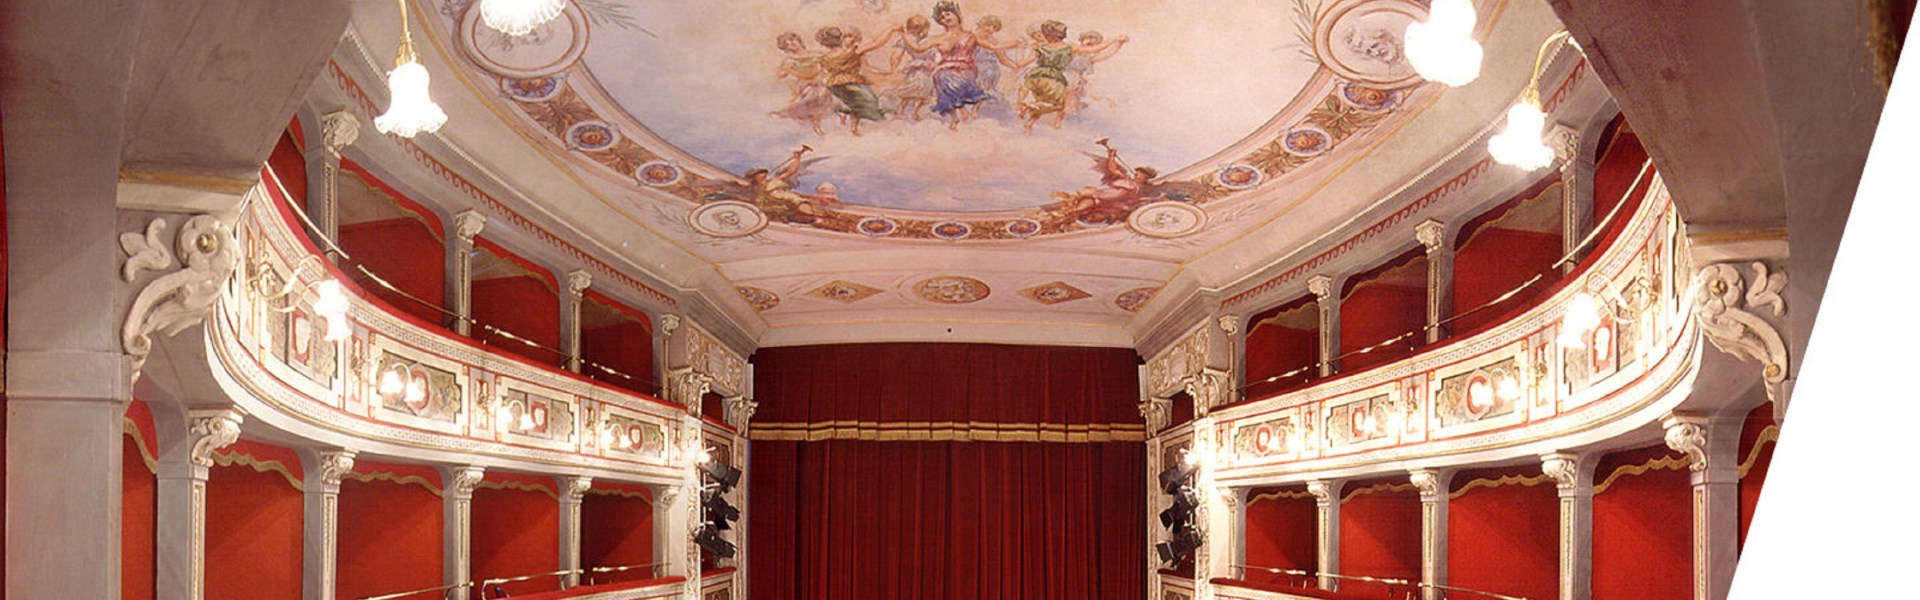 Mogliano - Teatro Apollo